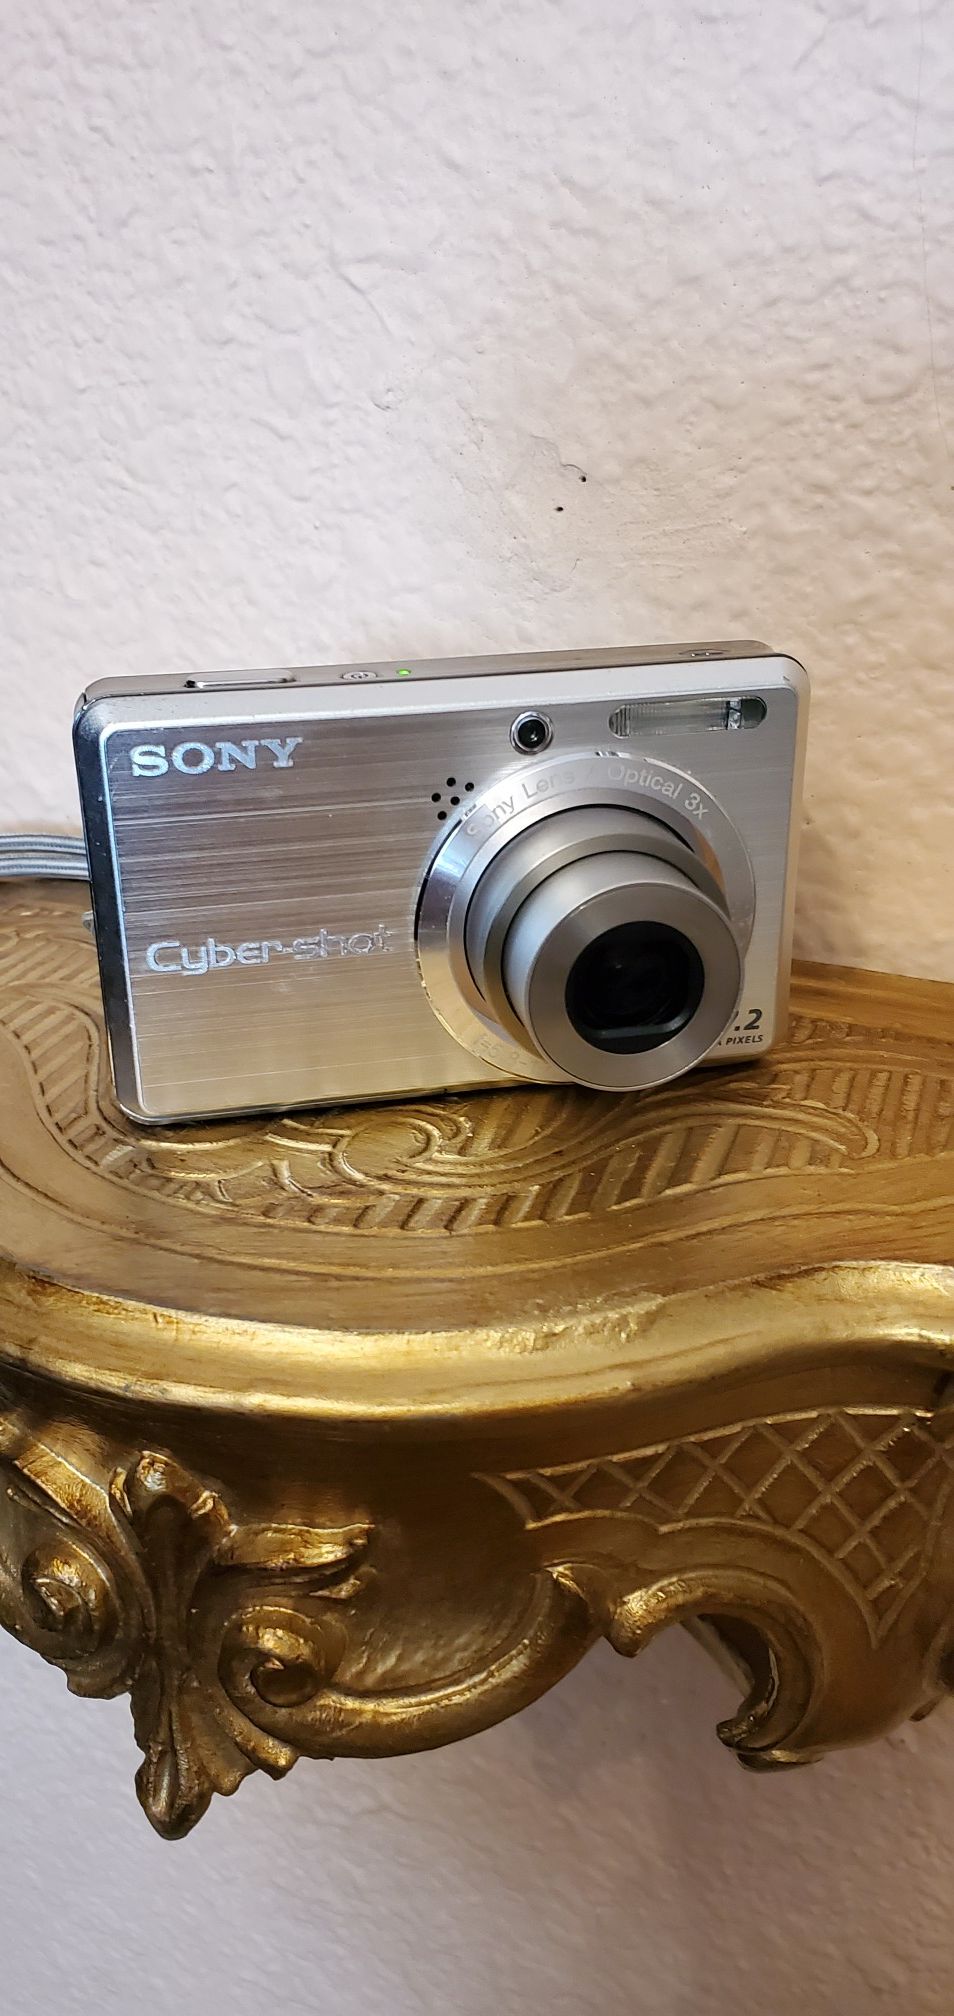 Sony Cyber-shot DSC-S750, 7.2 MP Digital camera-silver